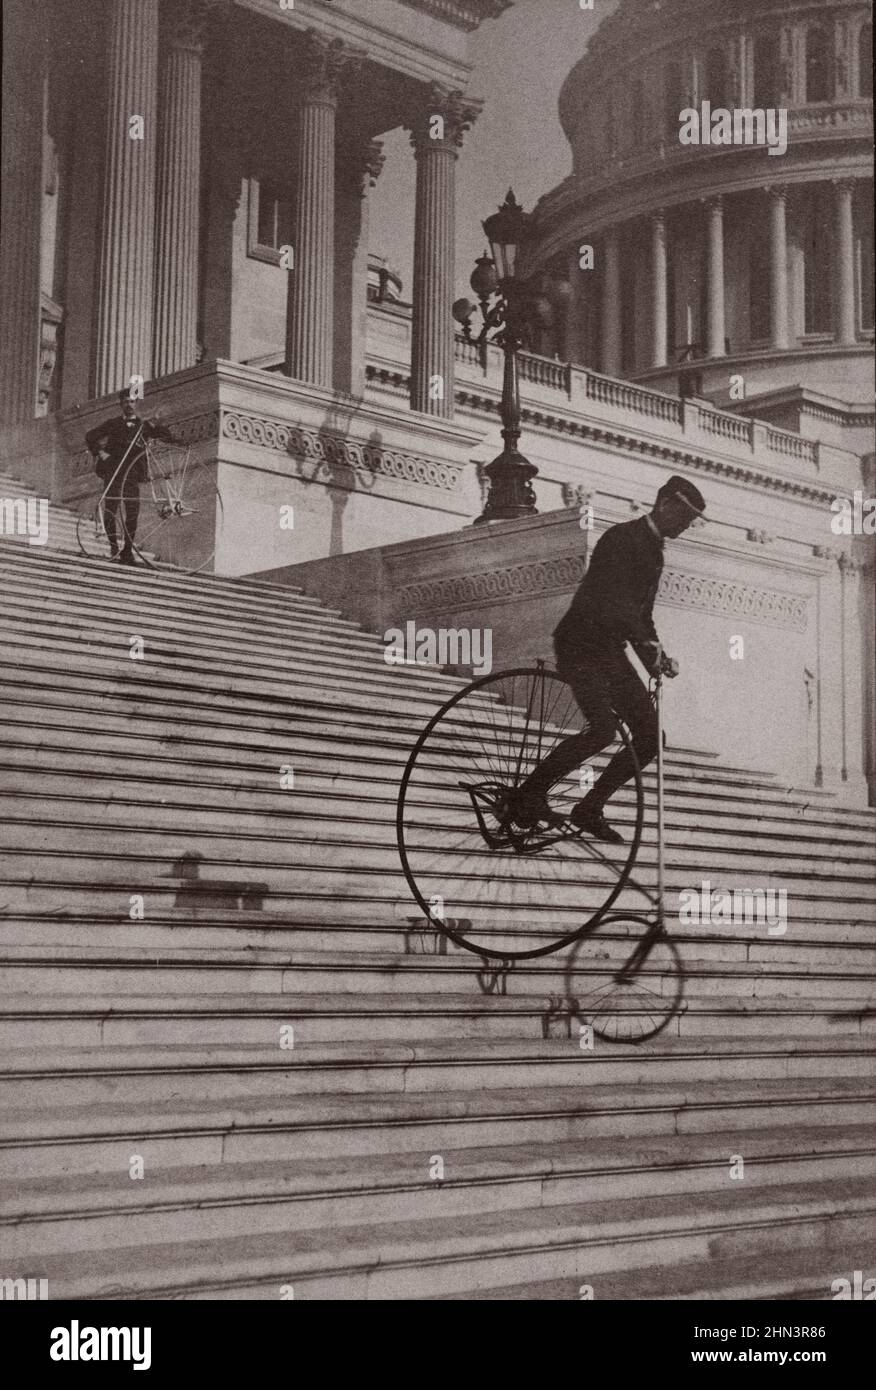 La fotografia d'epoca mostra a un uomo che corre in bicicletta lungo i gradini del Campidoglio degli Stati Uniti mentre un altro uomo con una bicicletta attende in cima. 1884 Foto Stock